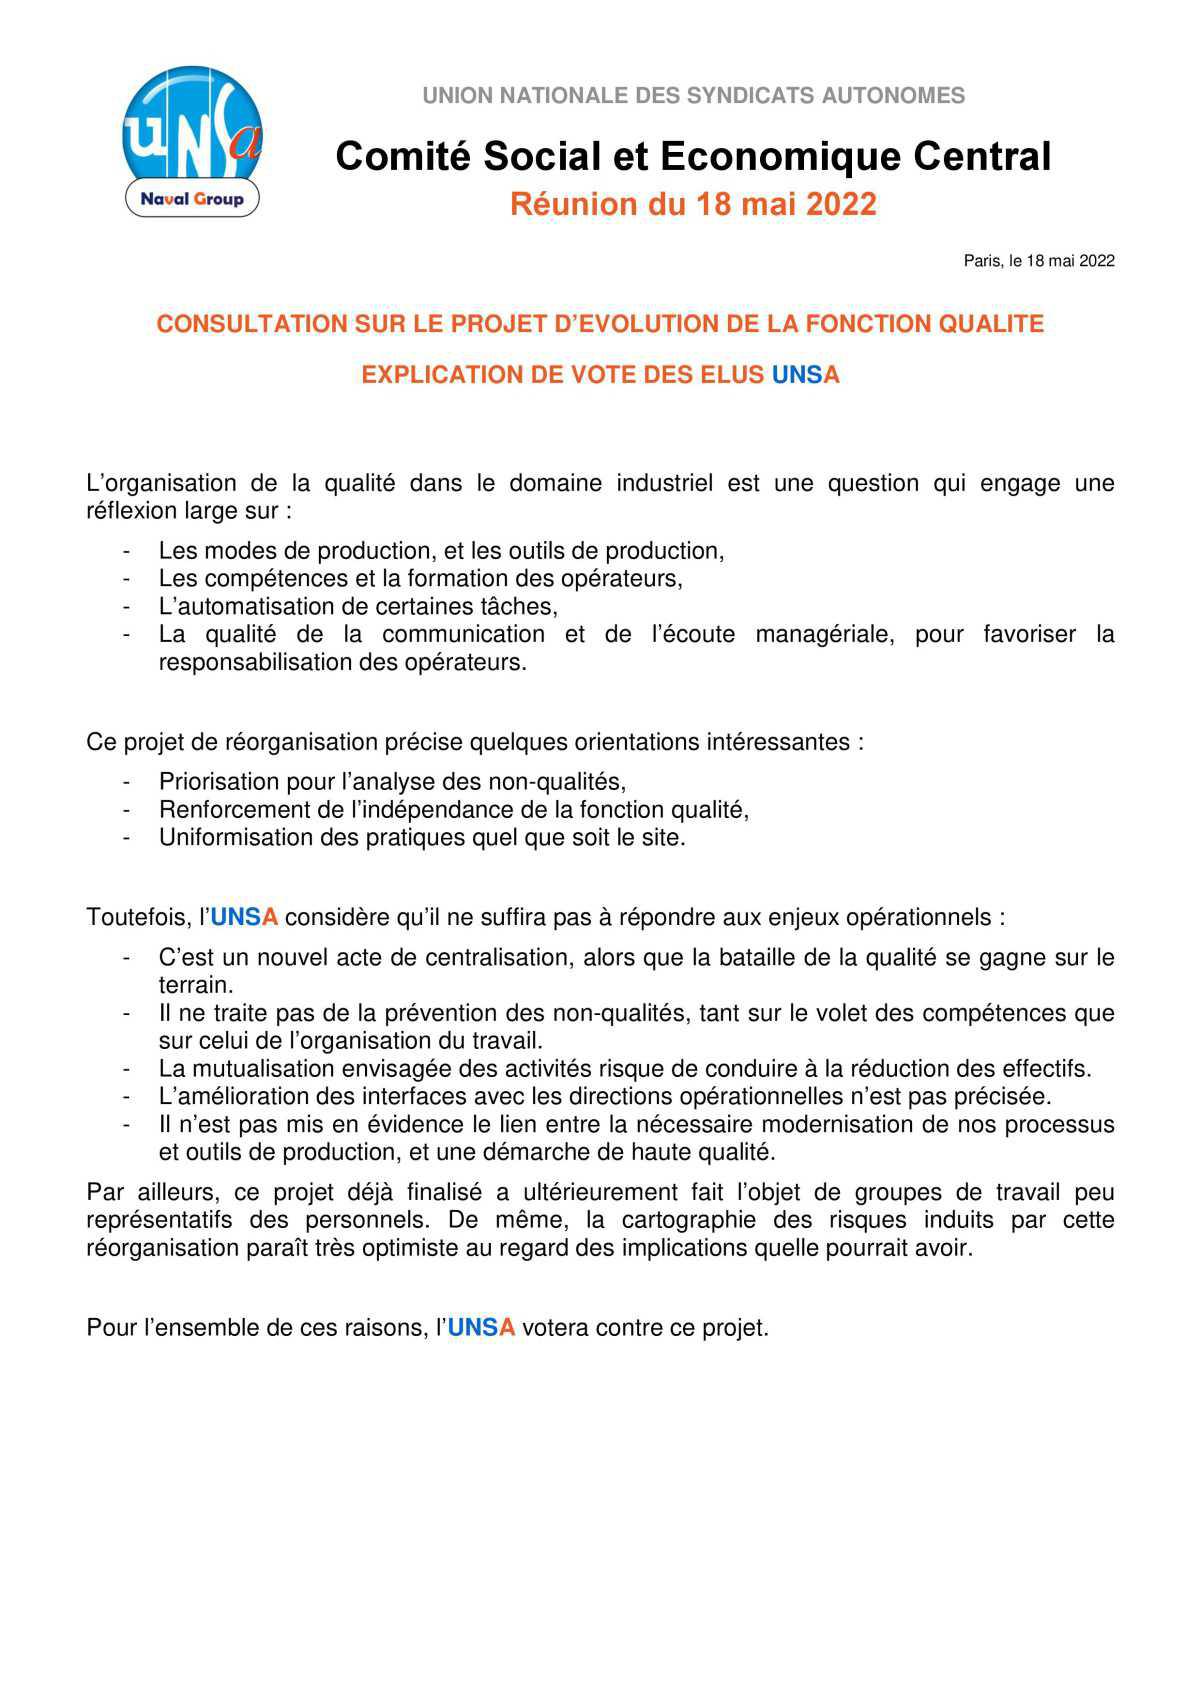 Réunion du 18 mai 2022 - réorganisation Qualité - explication de vote UNSA